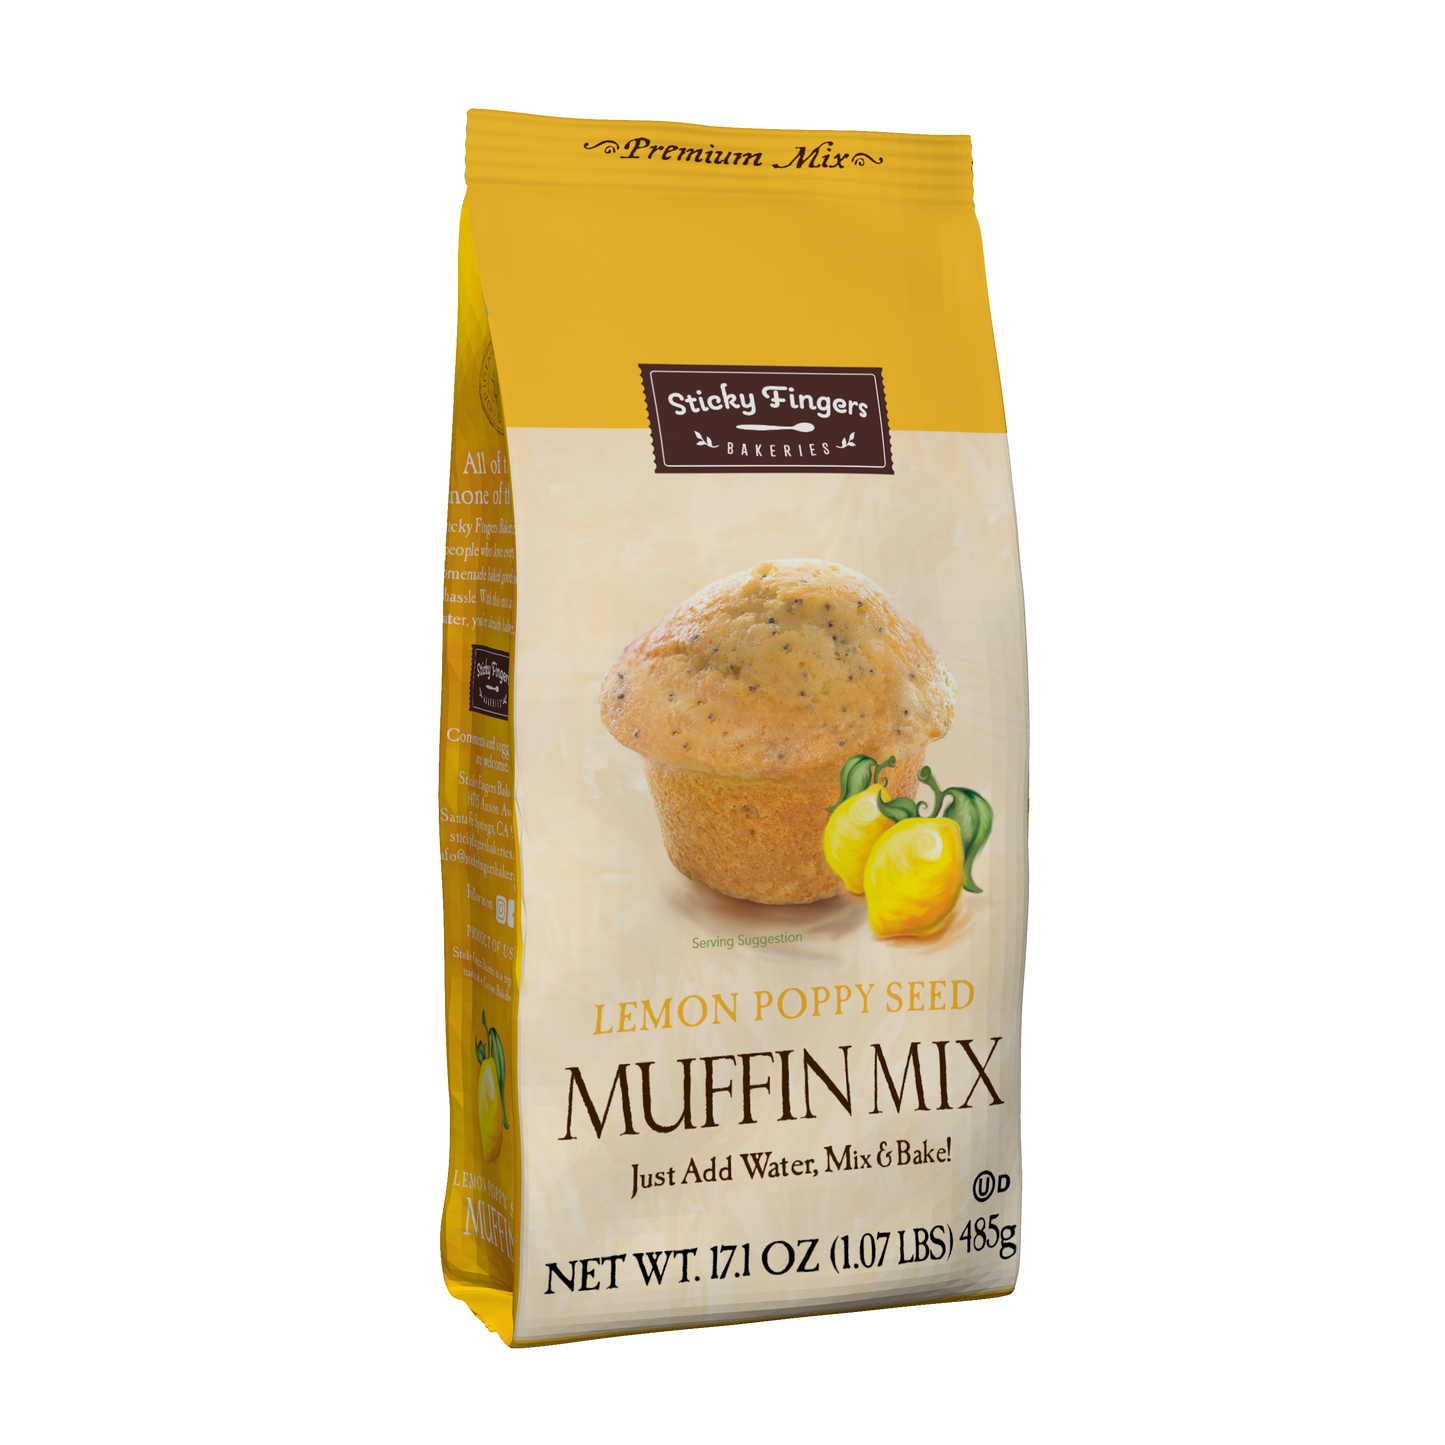 Lemon Poppy Seed Muffin Mix